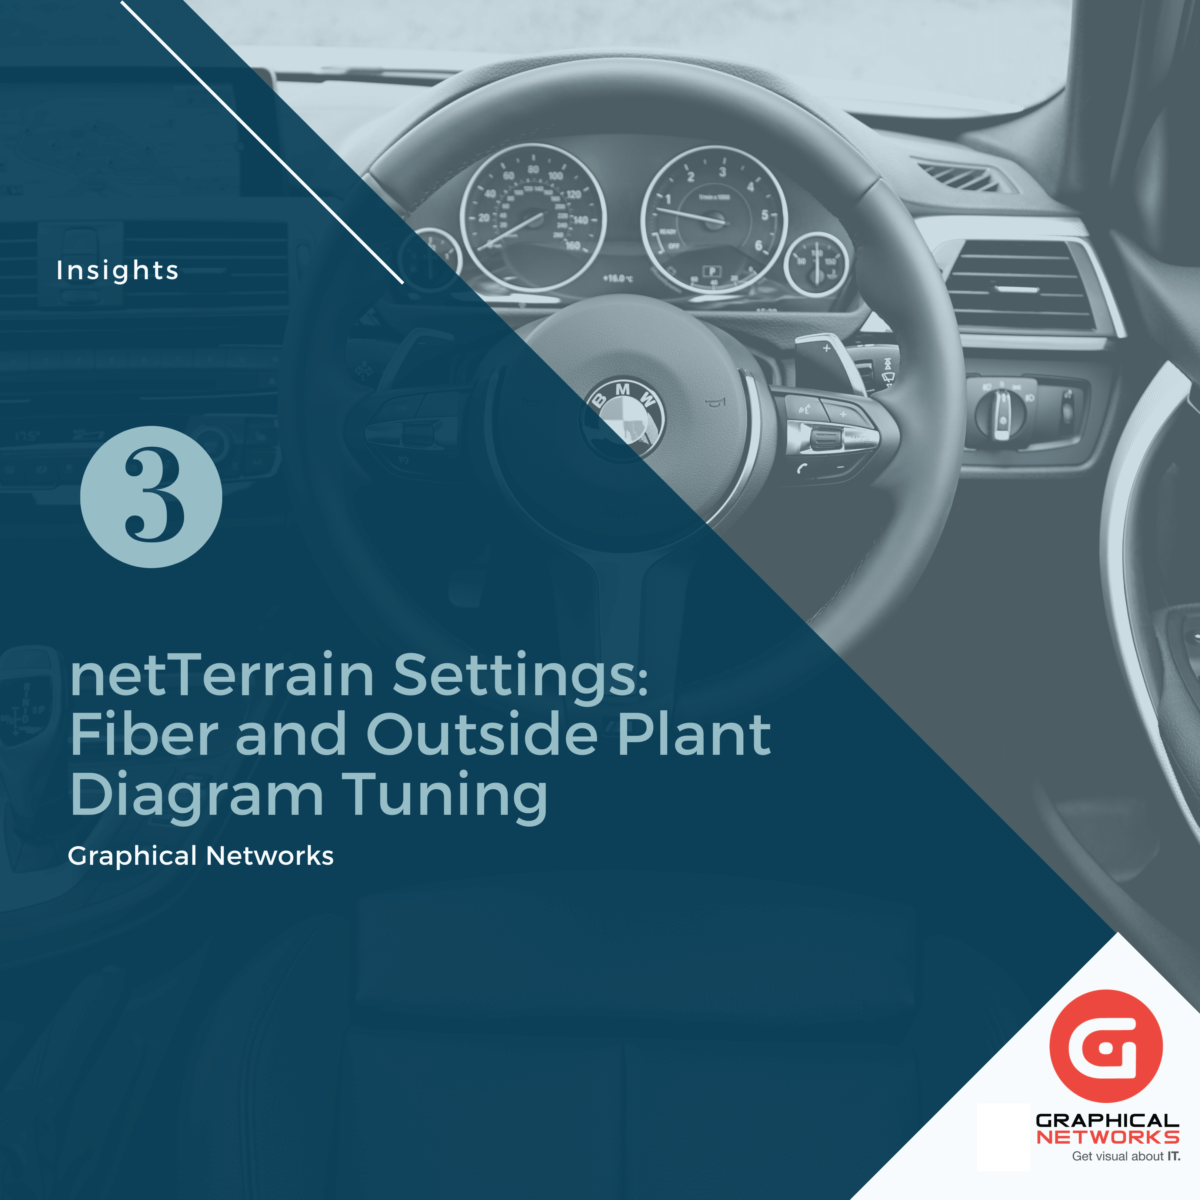 netTerrain Settings: Fiber and Outside Plant Diagram Tuning